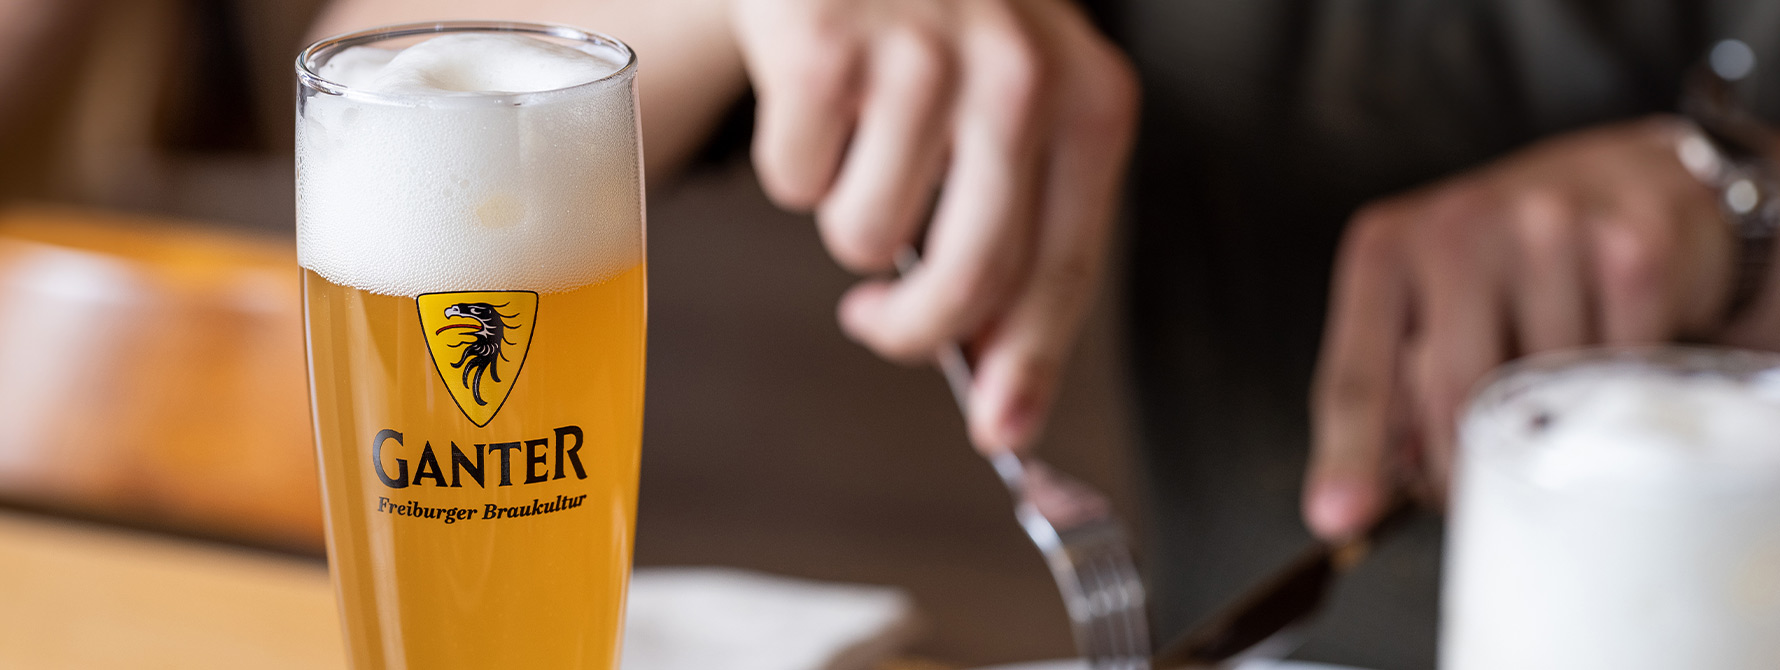 Zwei Gläser Ganter-Bier auf einem Tisch